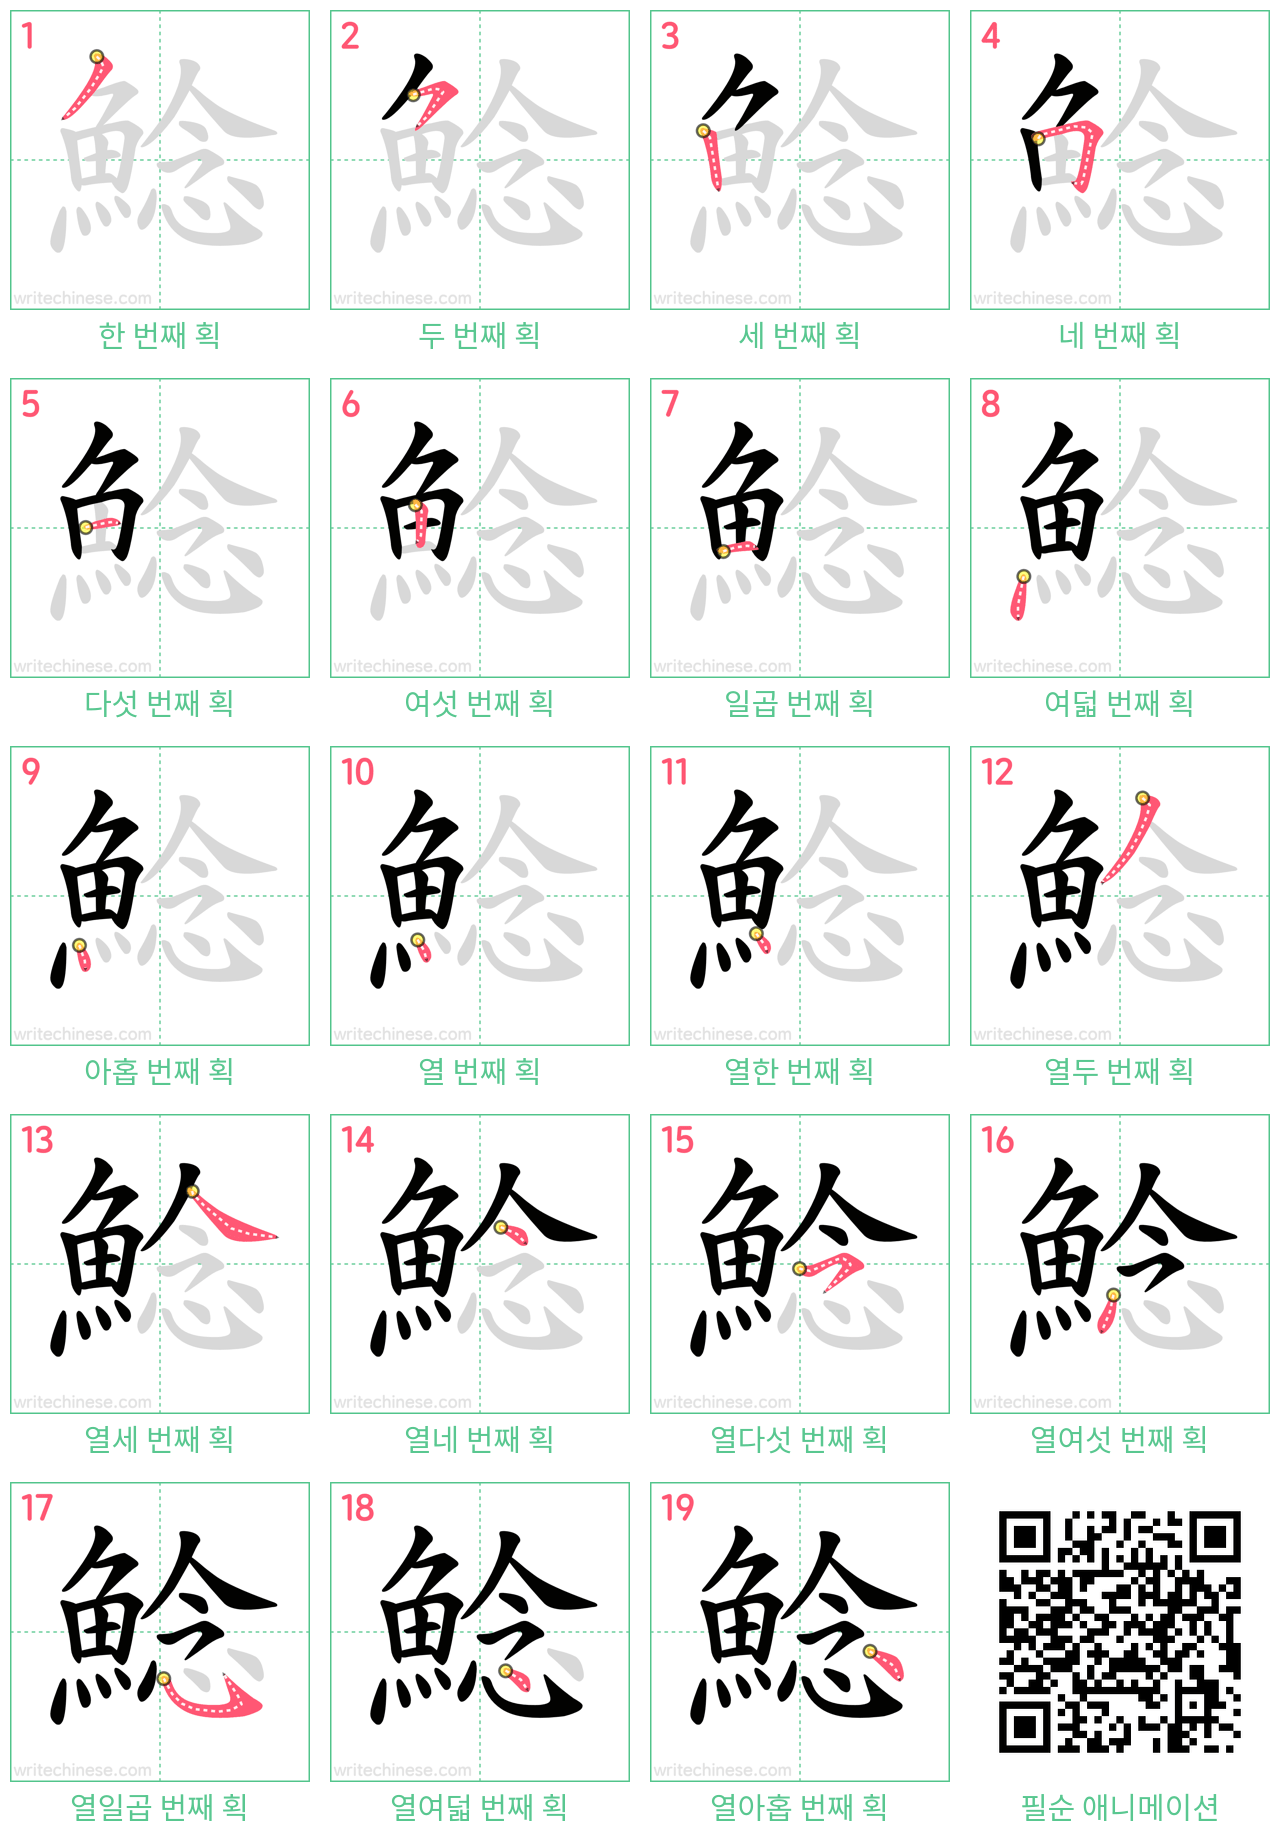 鯰 step-by-step stroke order diagrams